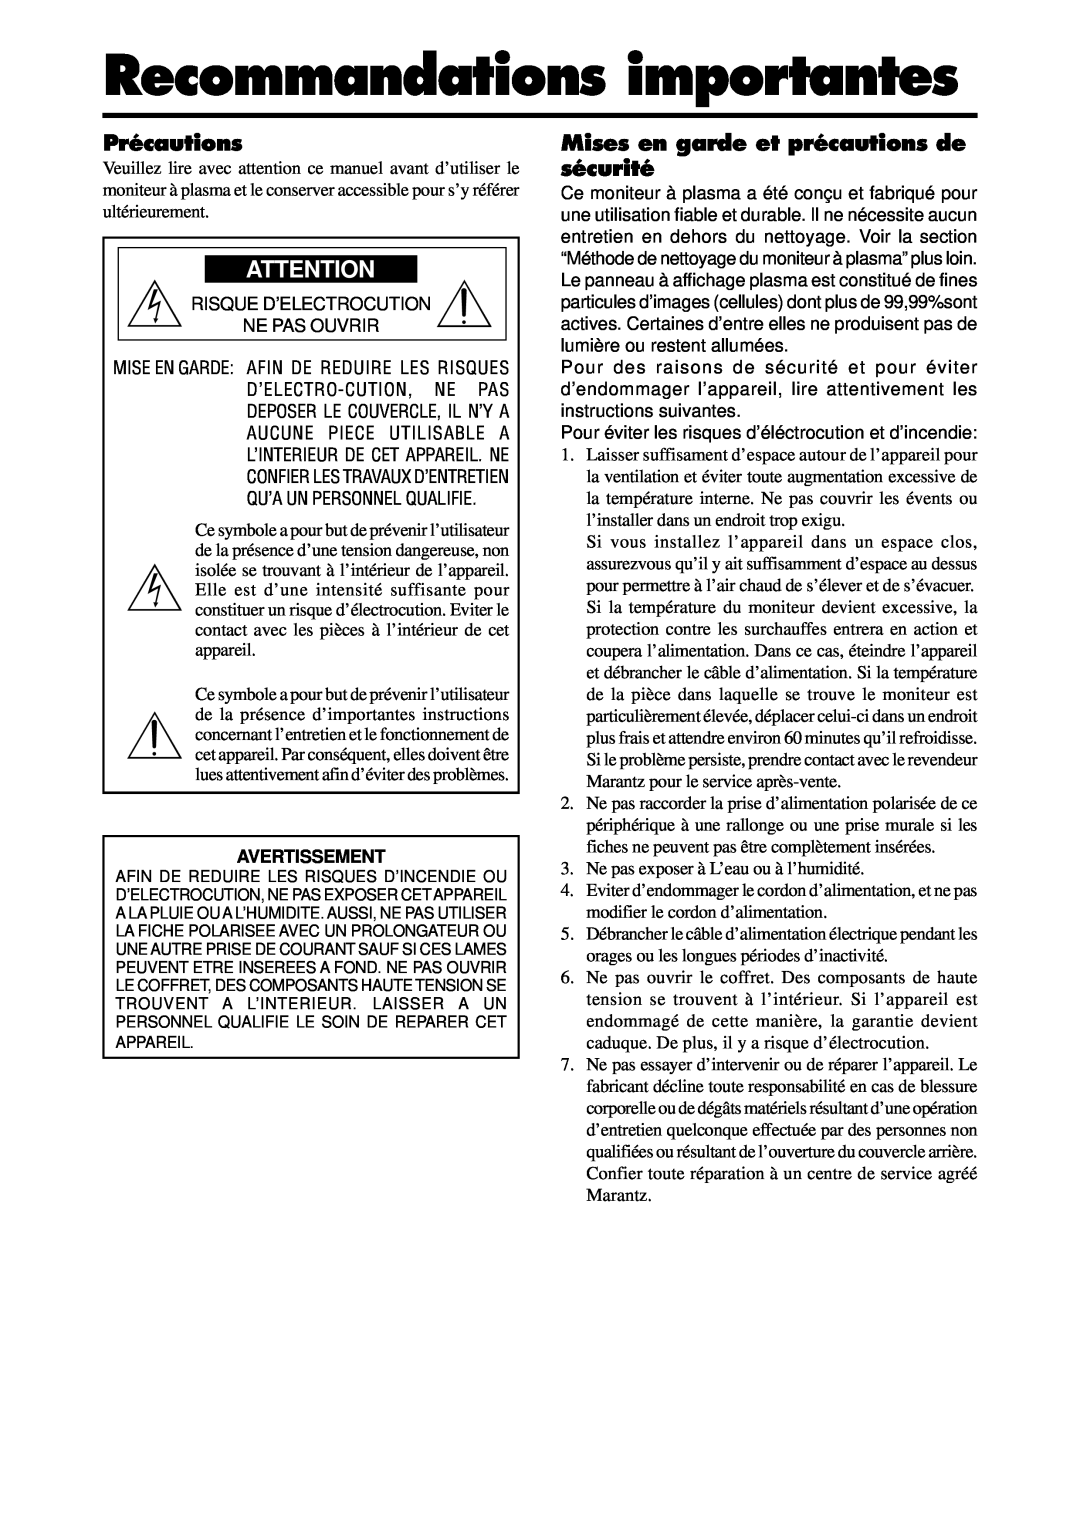 Marantz PD6140D manual Recommandations importantes, Précautions, Mises en garde et précautions de sécurité, Avertissement 